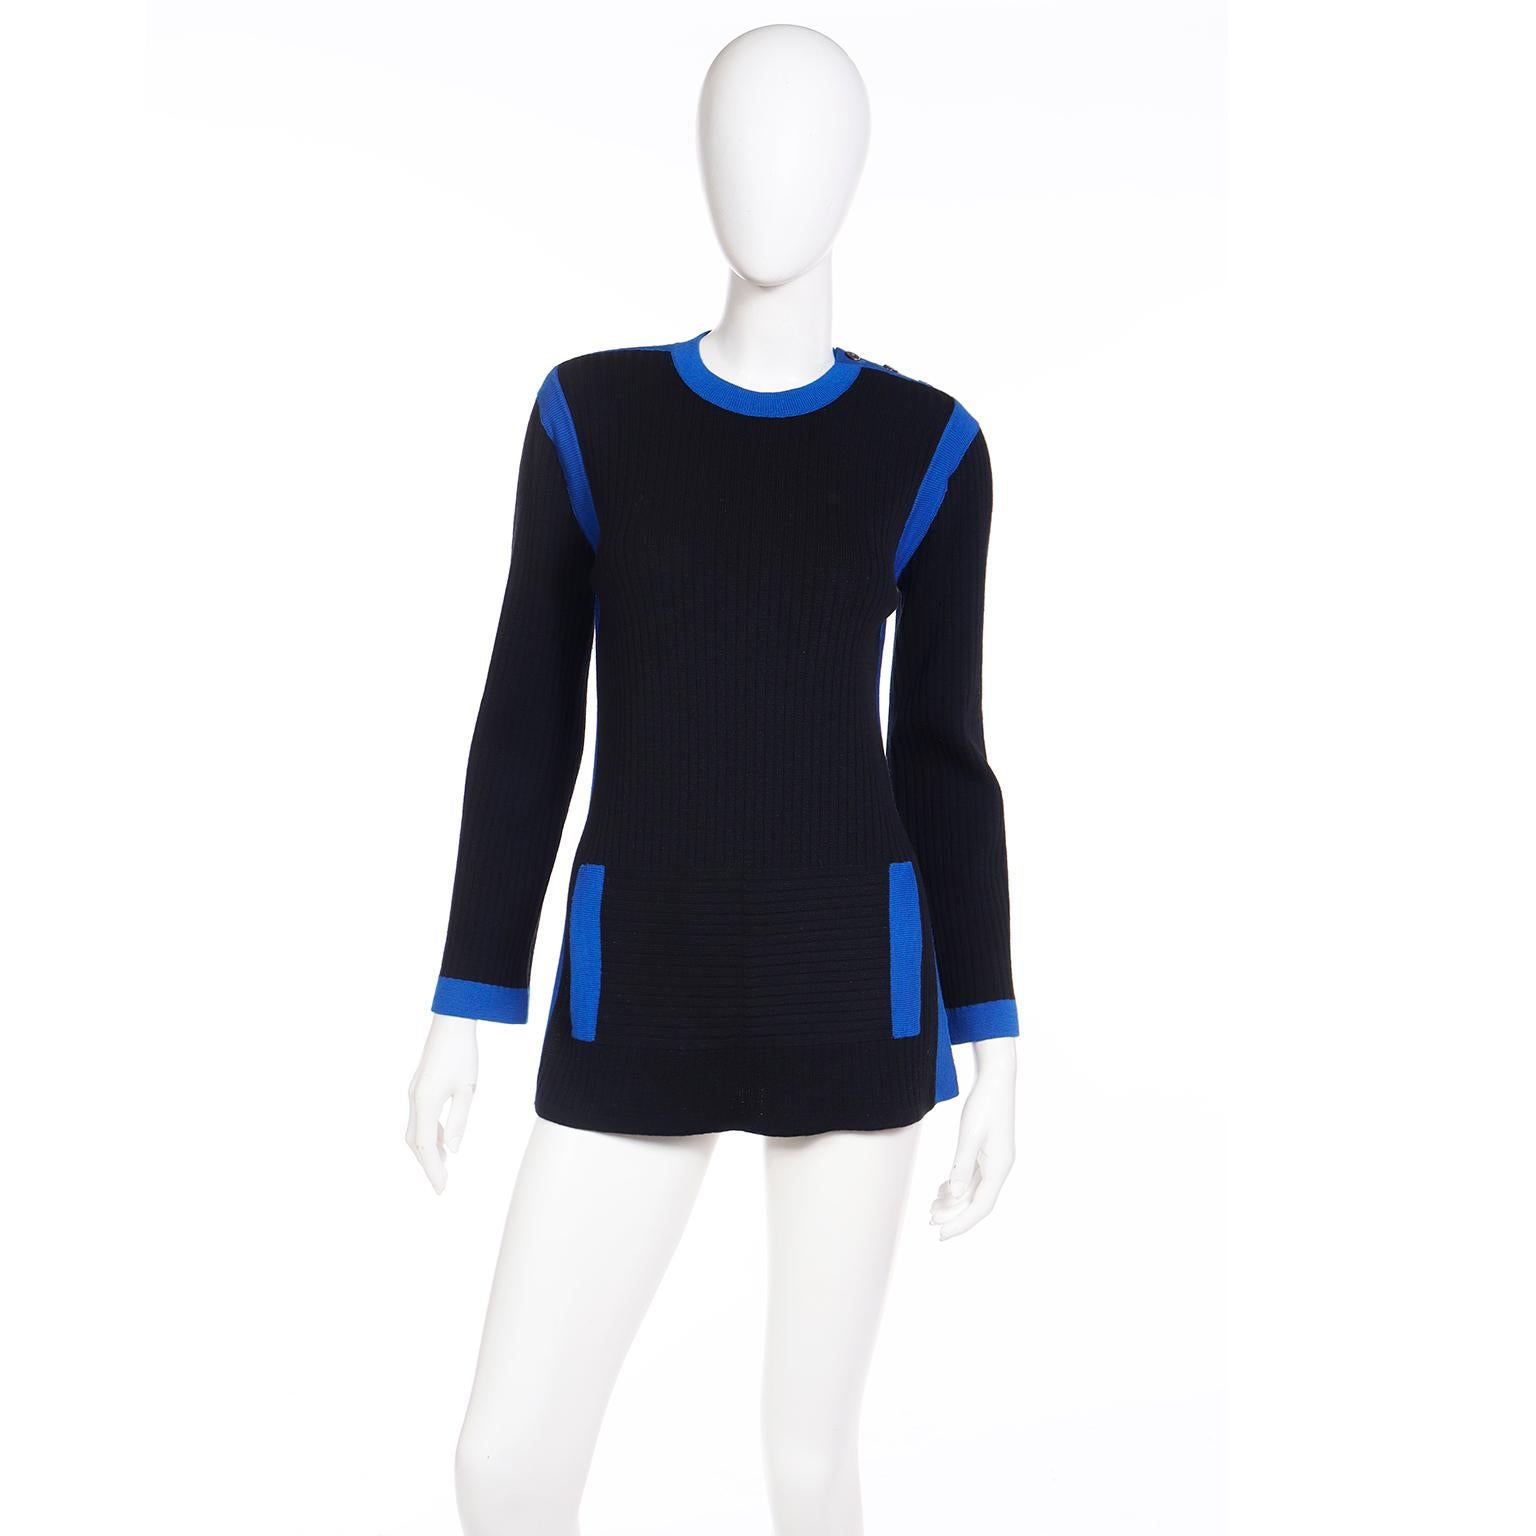 Dies ist ein YSL 1980's Vintage Pullover von Yves Saint Laurent in schwarz gerippt Wolle stricken mit schönen hellblau trimmen. Dieses lange Oberteil hat Schlitze an beiden Seiten und falsche Taschen auf der Vorderseite. An den Schultern befinden